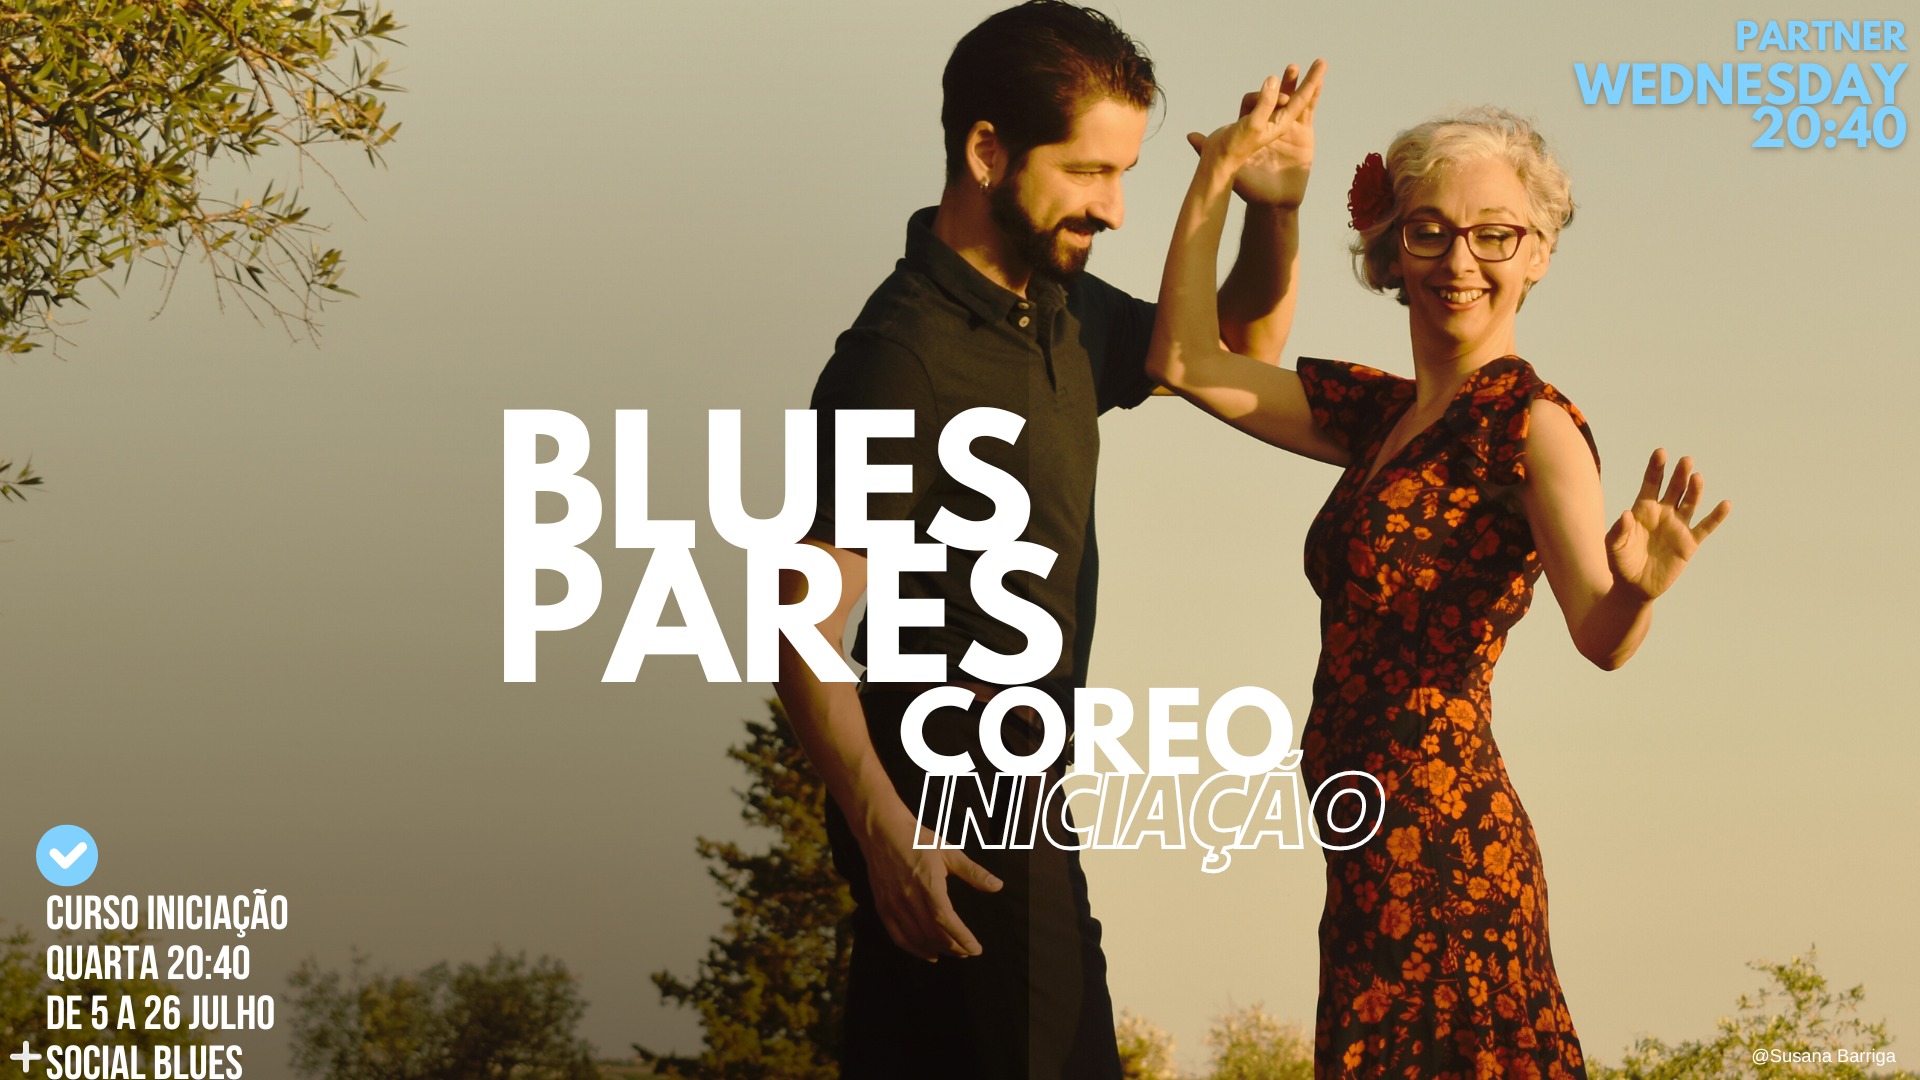  Partner Blues Coreo | Curso Iniciação